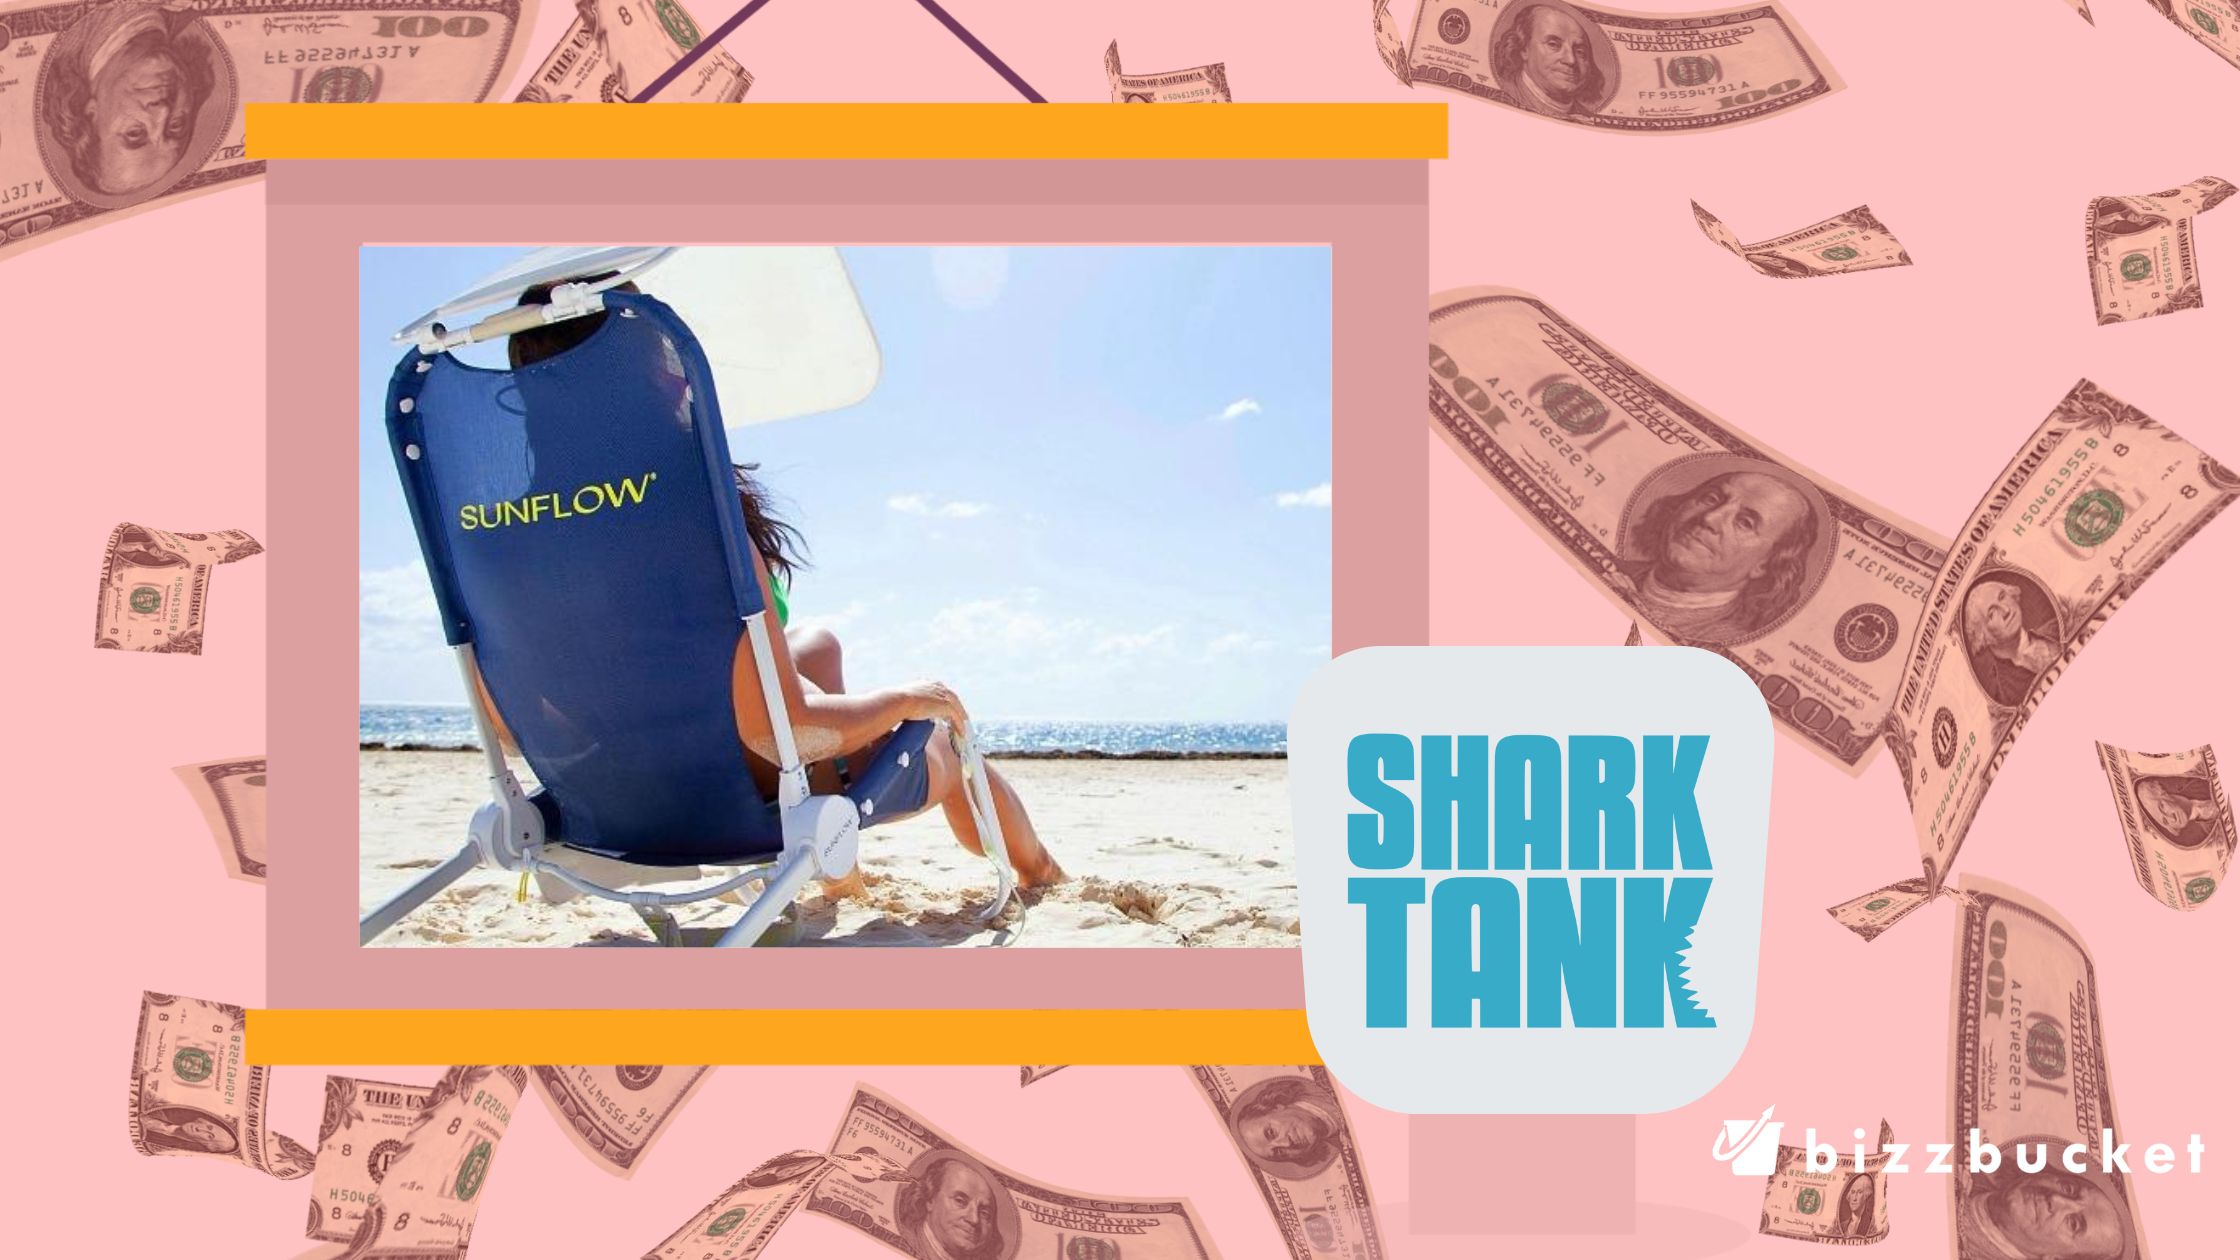 Sunflow shark tank update